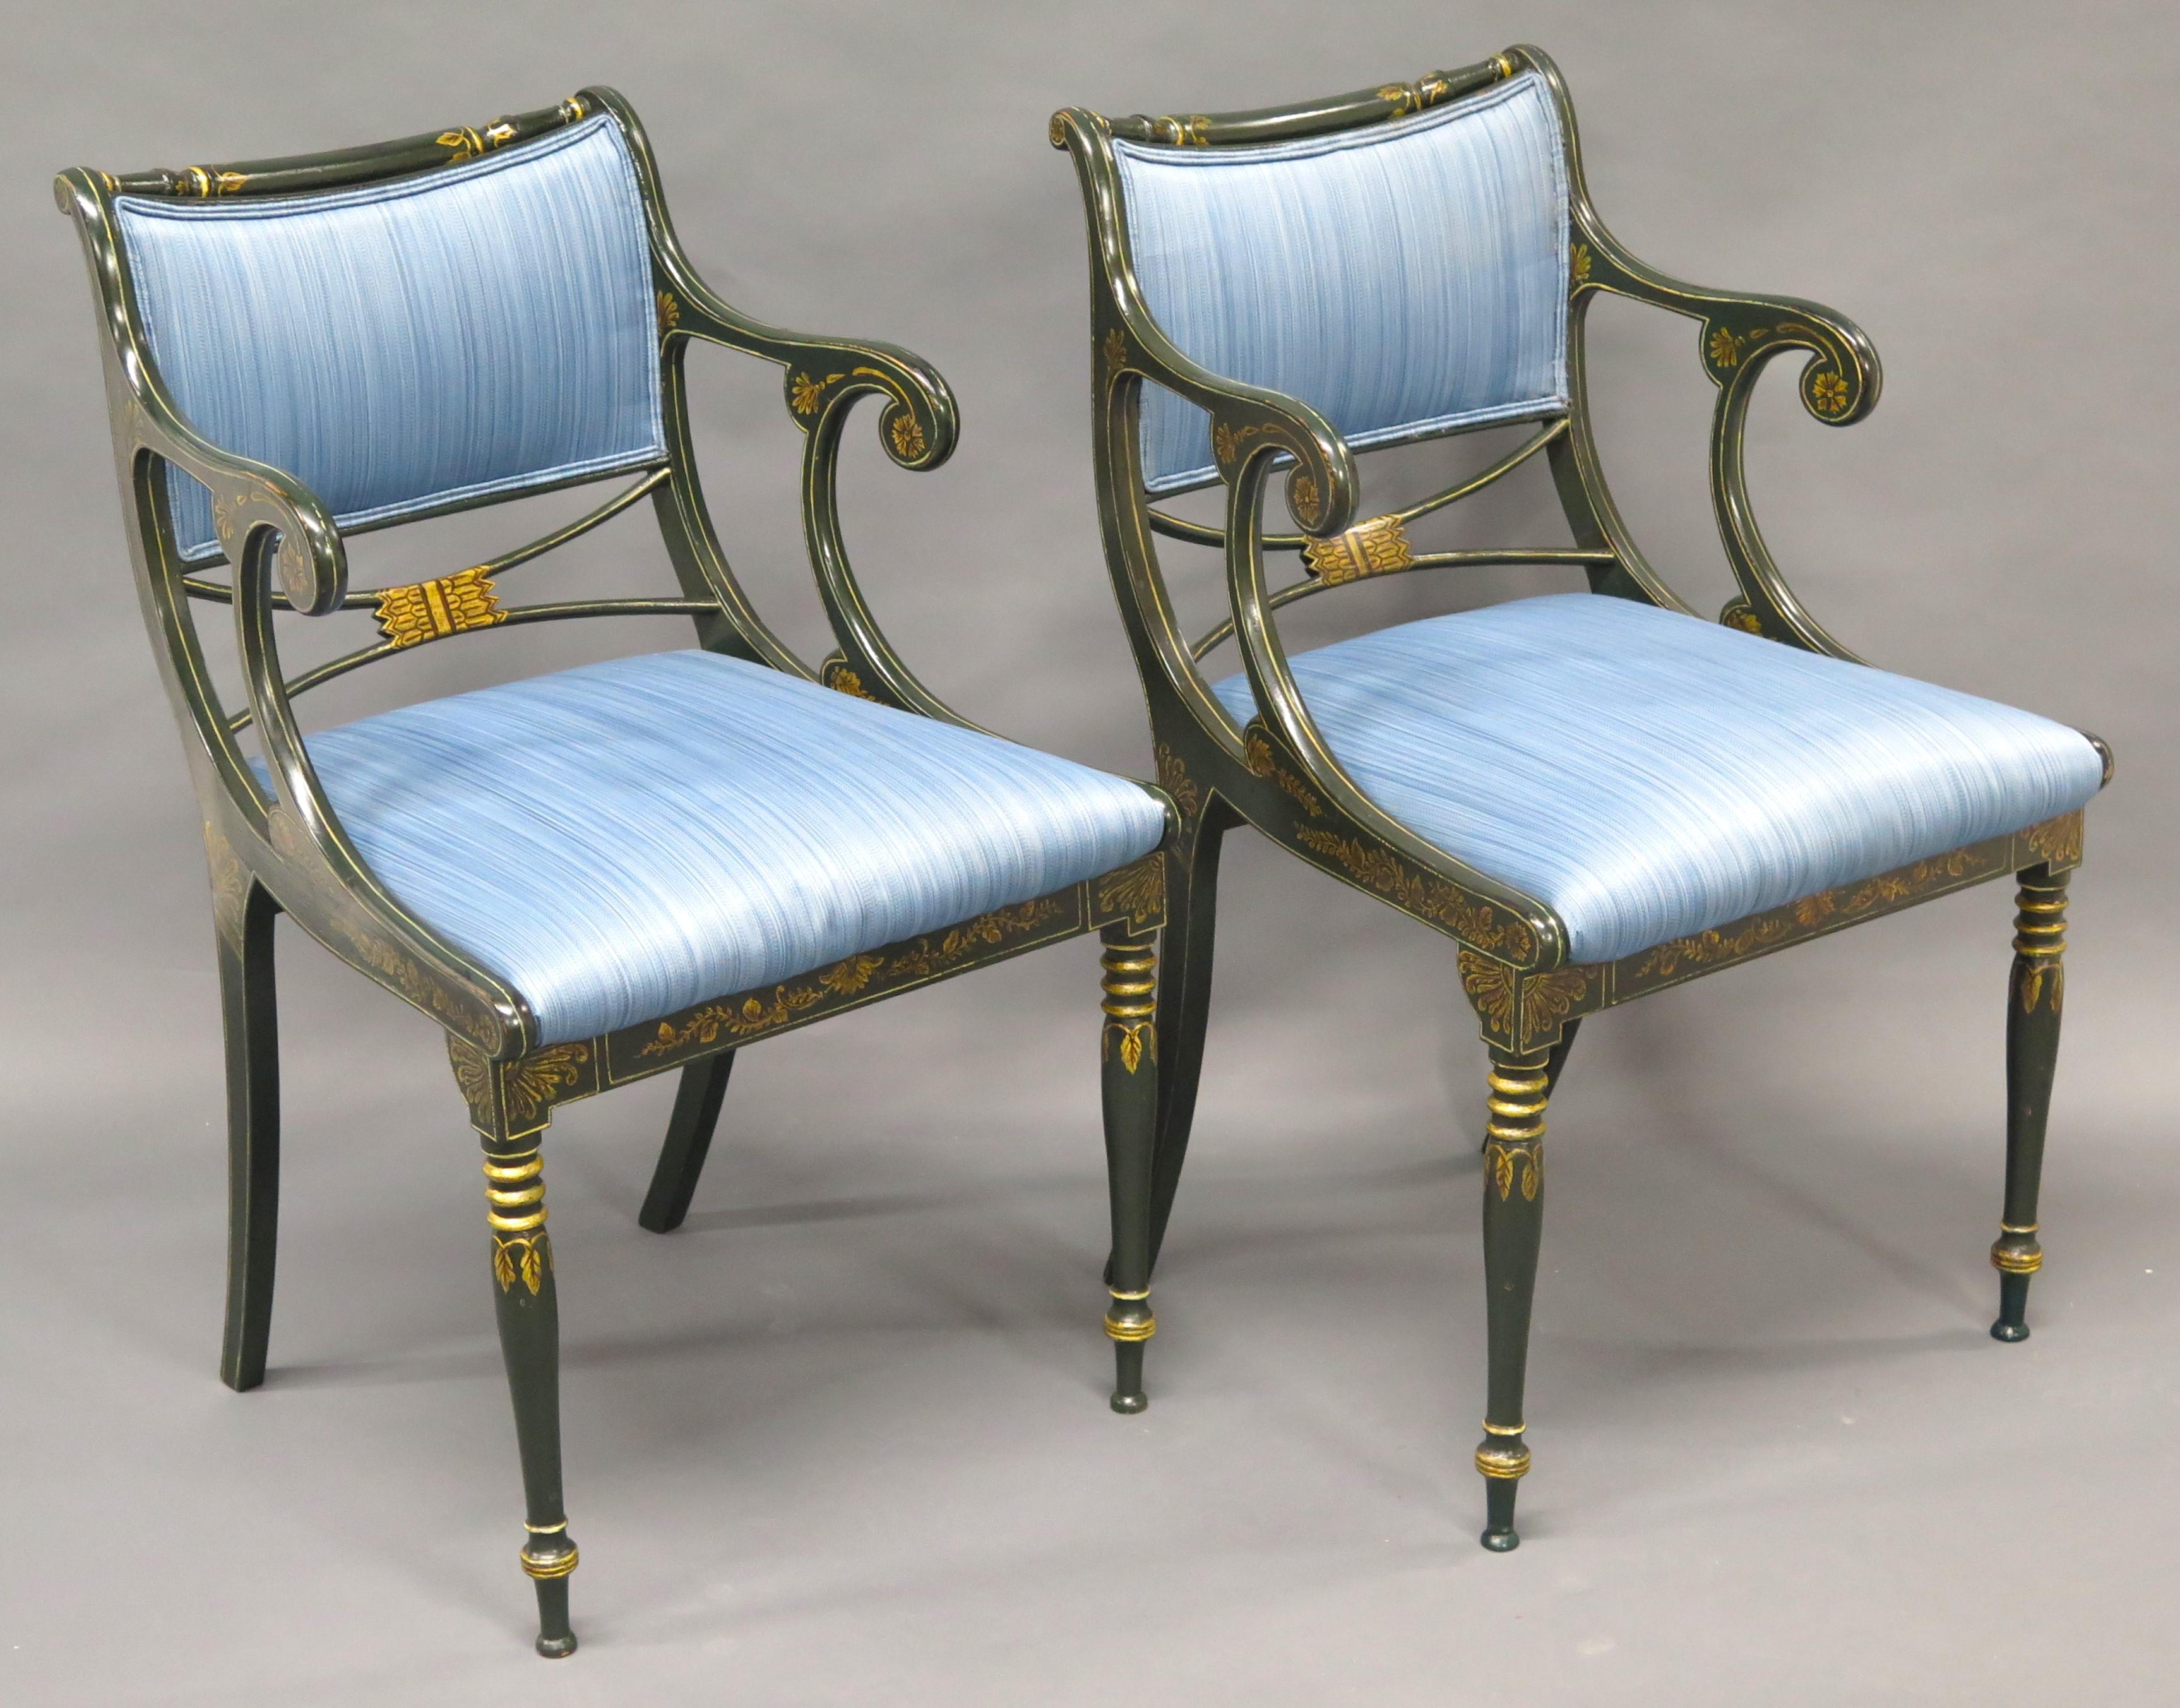 Fauteuils de style Regency anglais tapissés de velours de soie à rayures bleues. Chaque fauteuil est décoré au pochoir doré sur une peinture vert foncé (presque noire). Angleterre. Milieu du 20e siècle